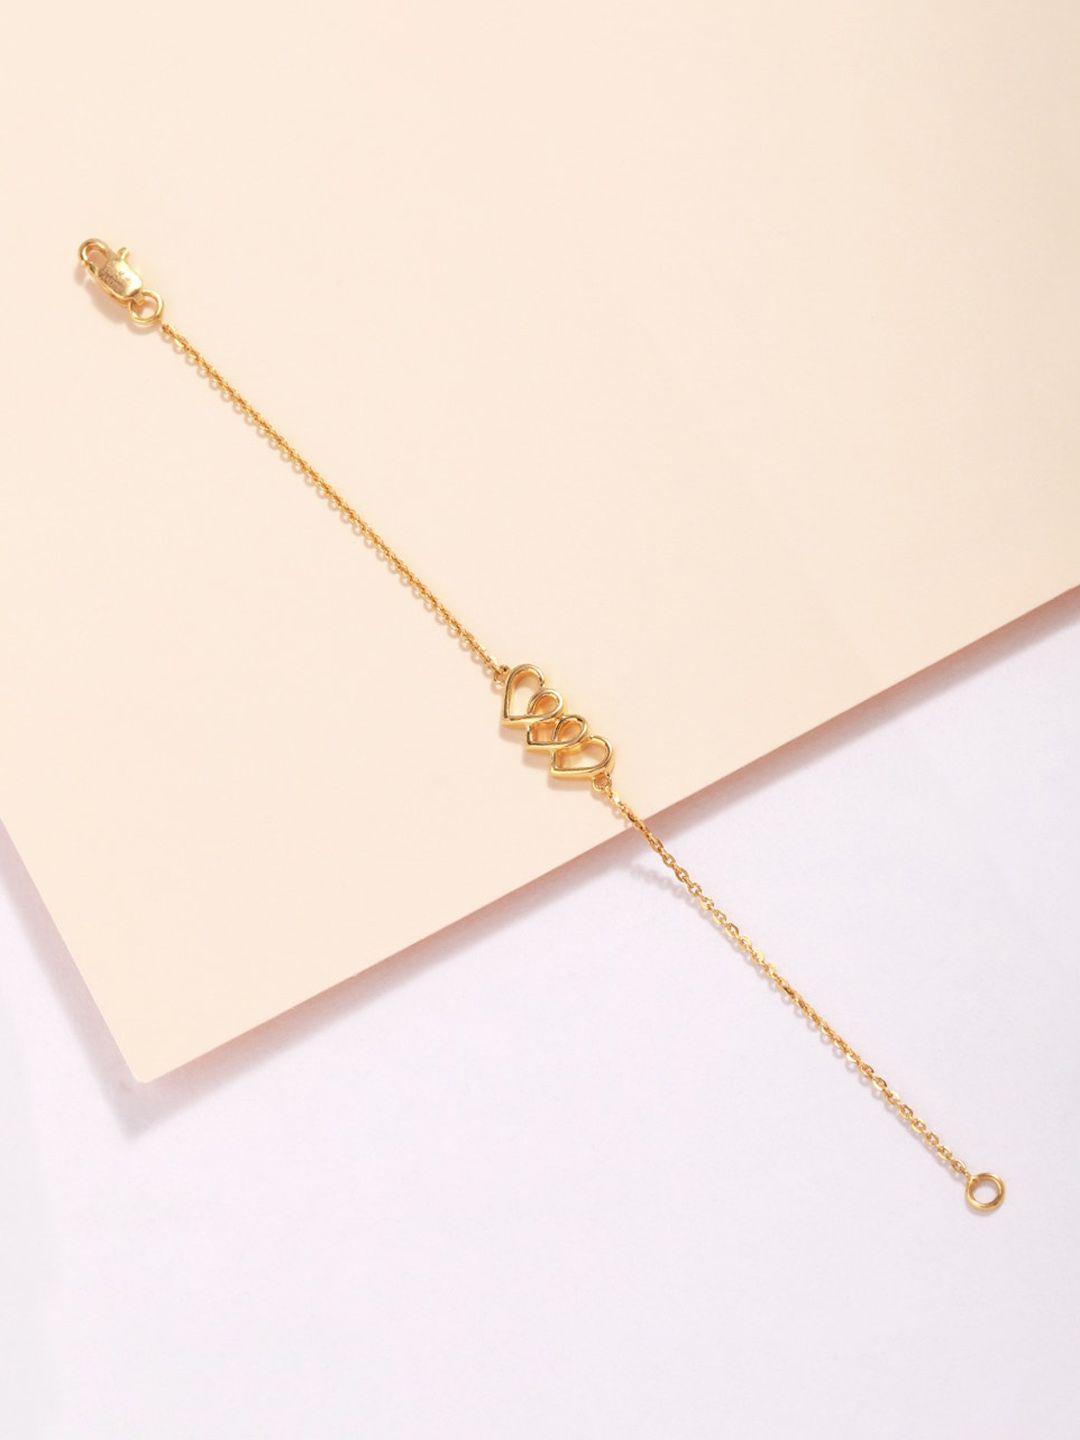 candere-a-kalyan-jewellers-company-14kt-gold-bracelet-1.85gm